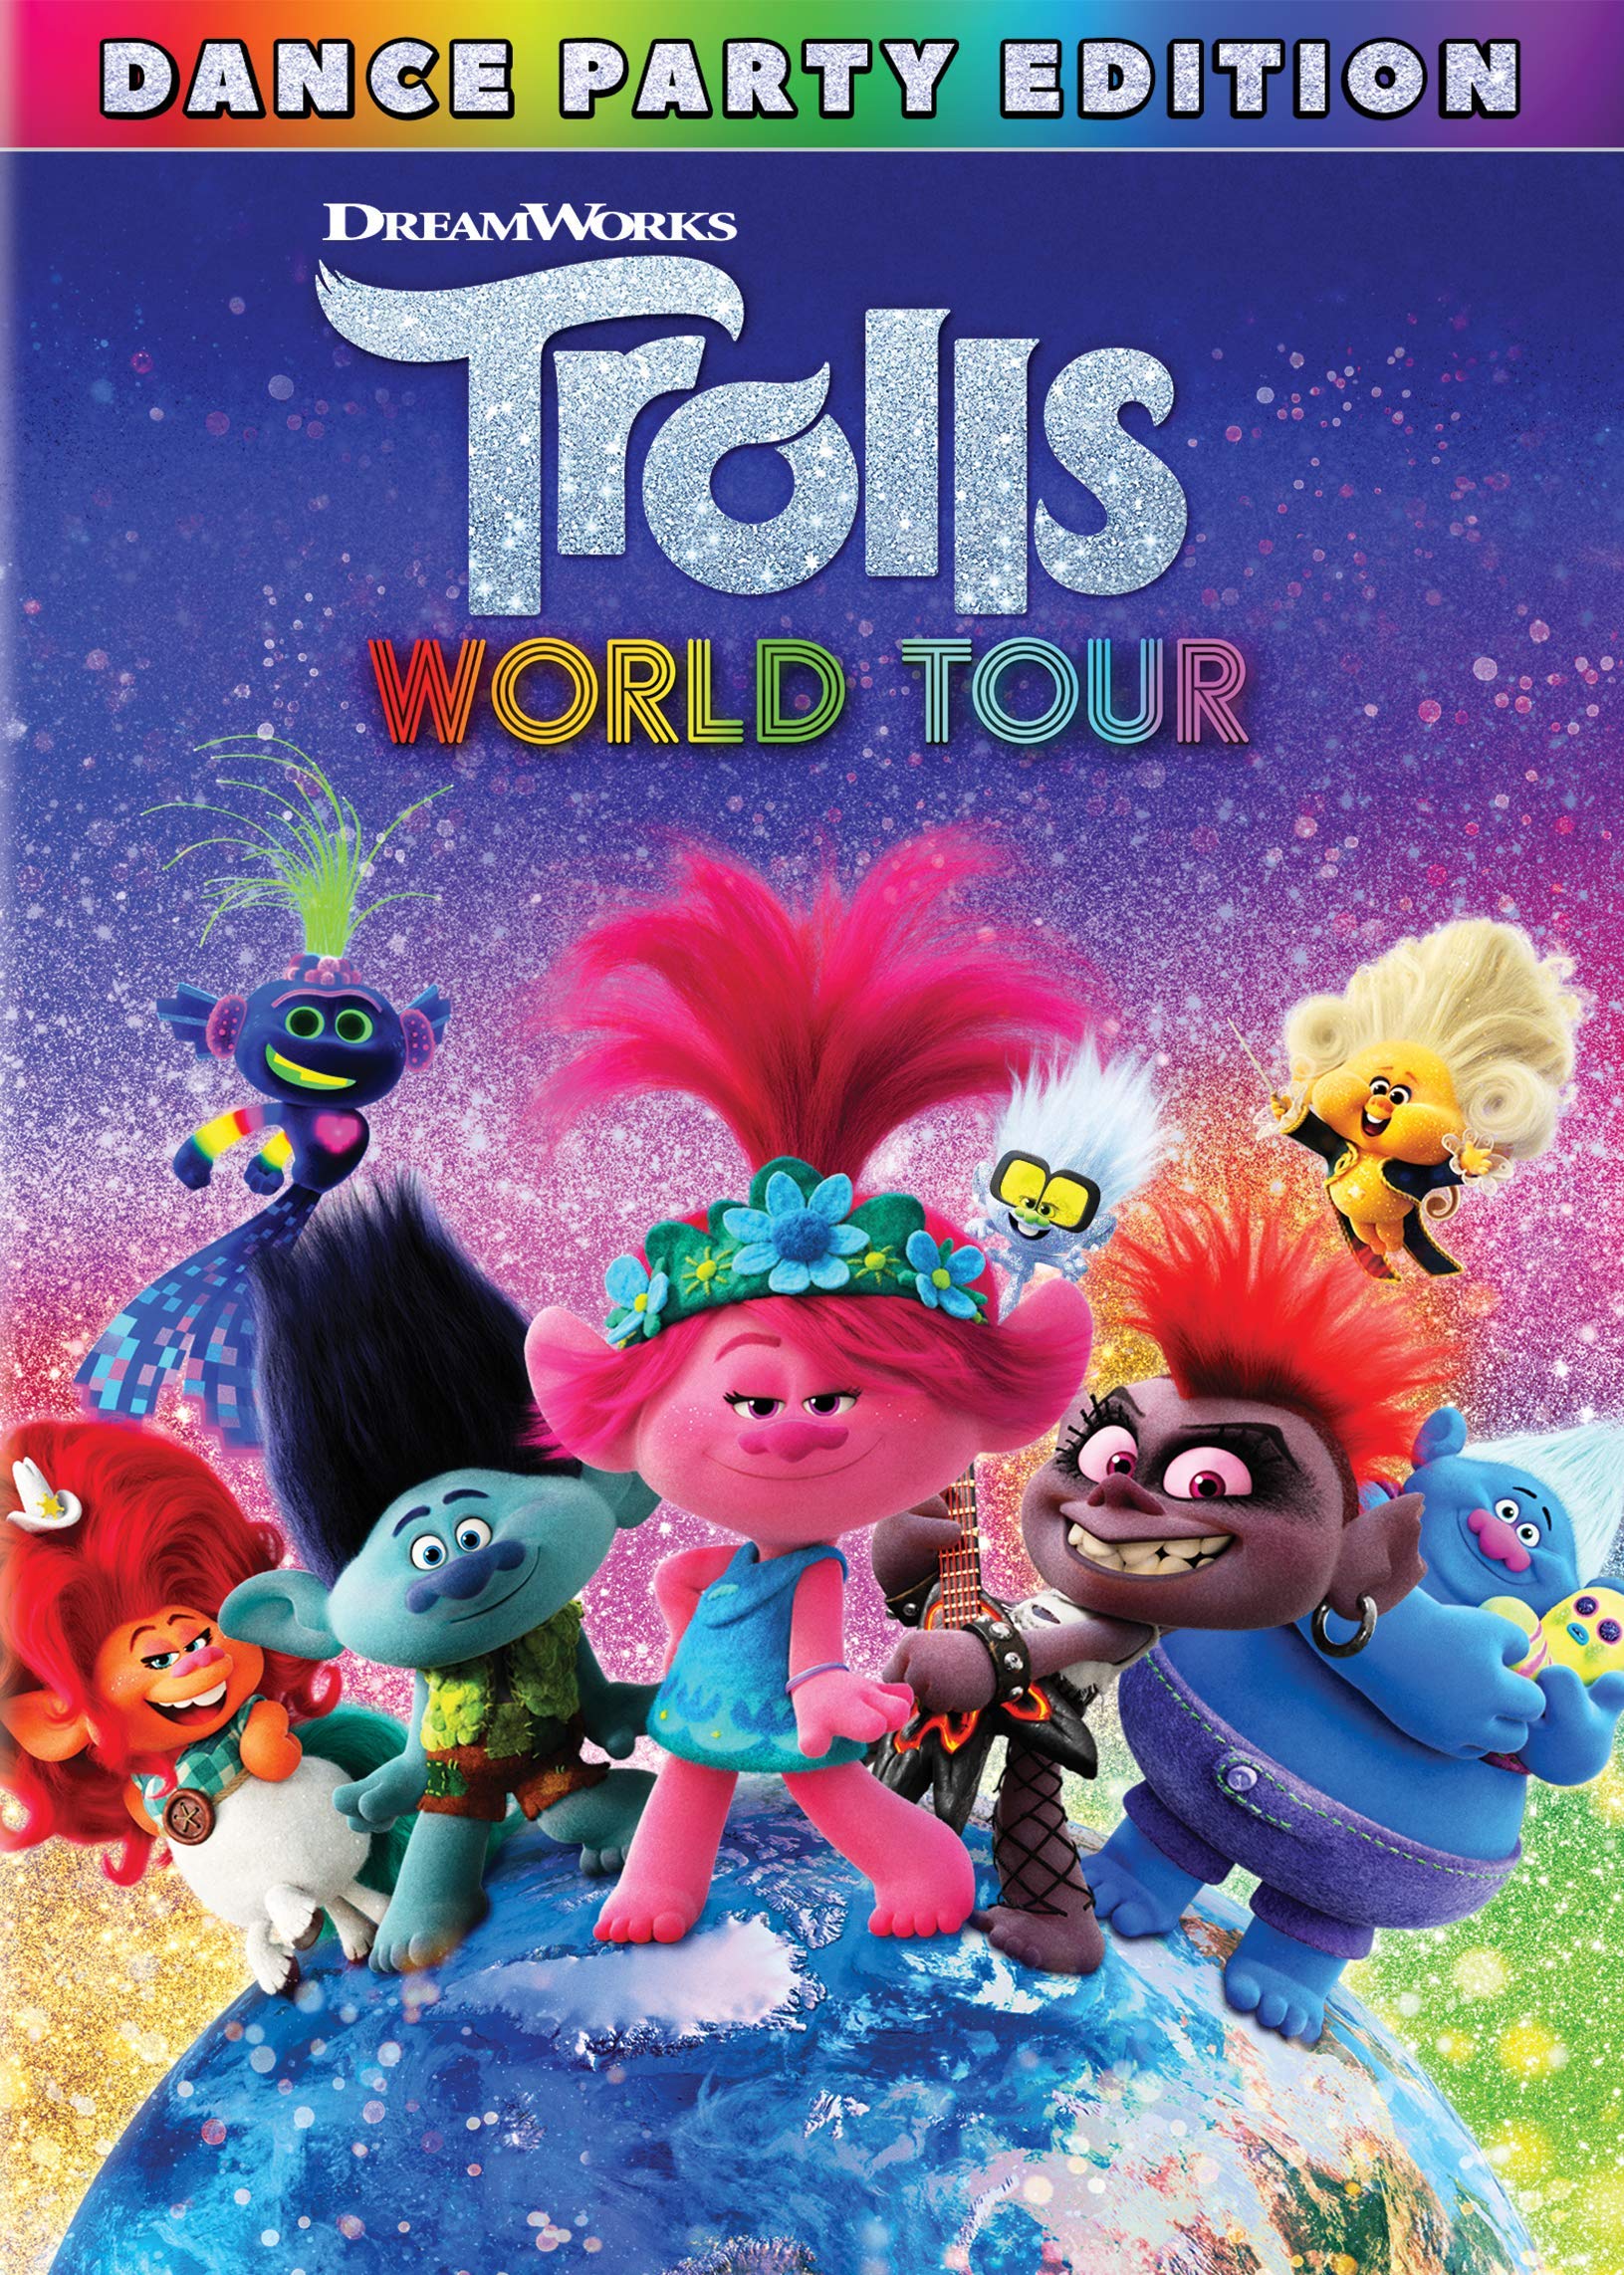 trolls movie world tour